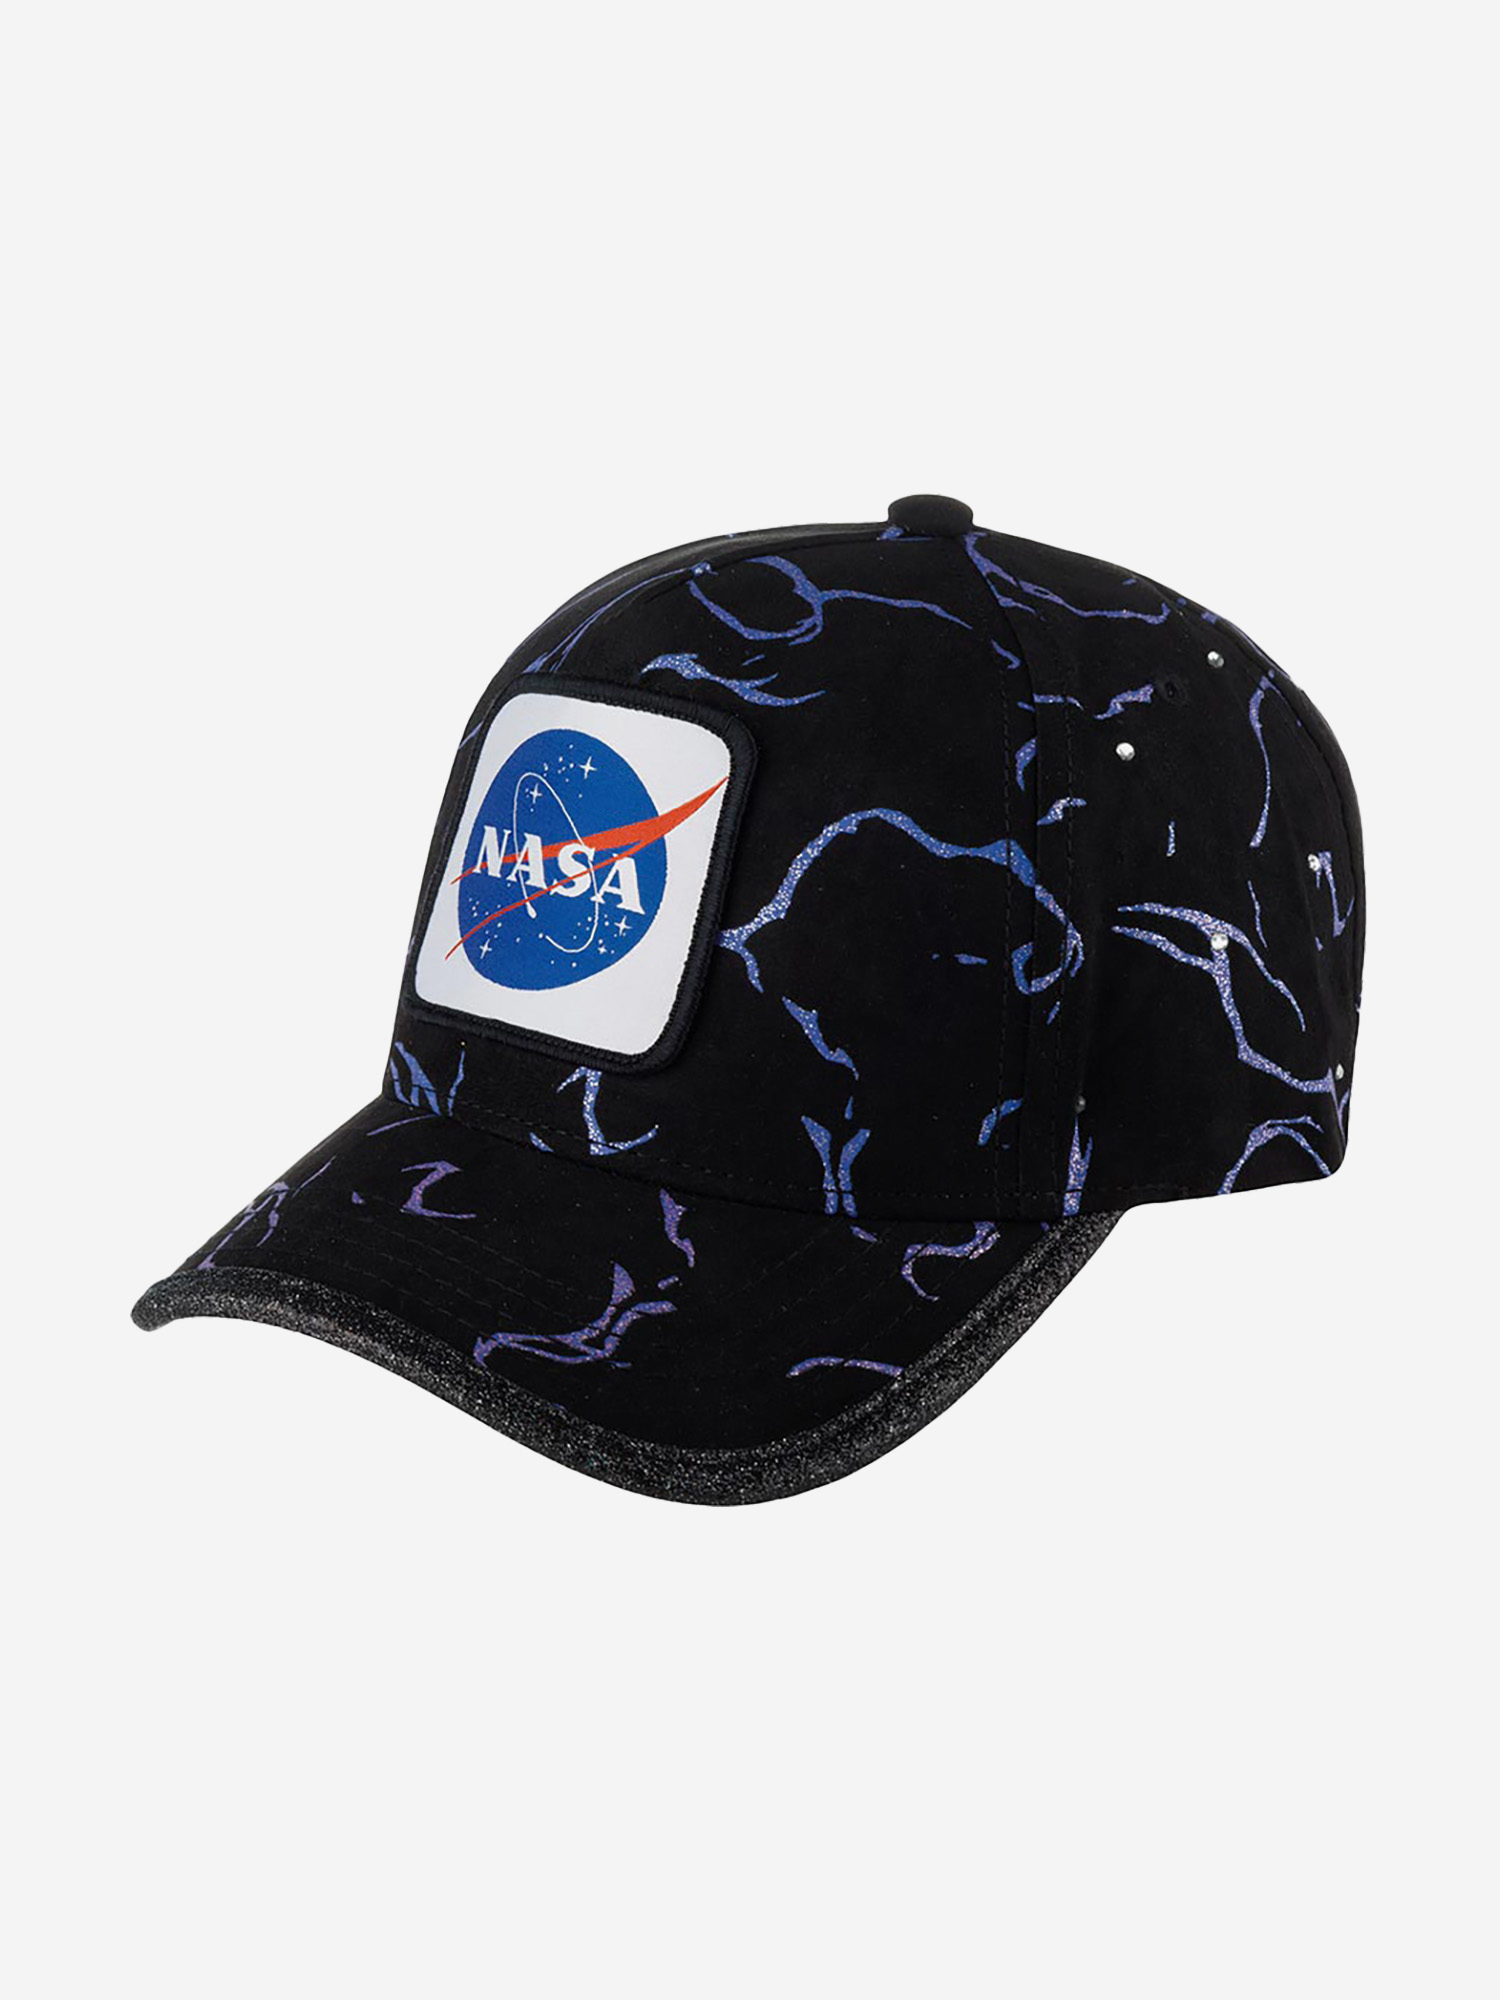 Бейсболка CAPSLAB CL/NASA/1/TAG/GLI NASA (черный), Черный бейсболка american needle 44900a nasa space with nasa replay голубой голубой